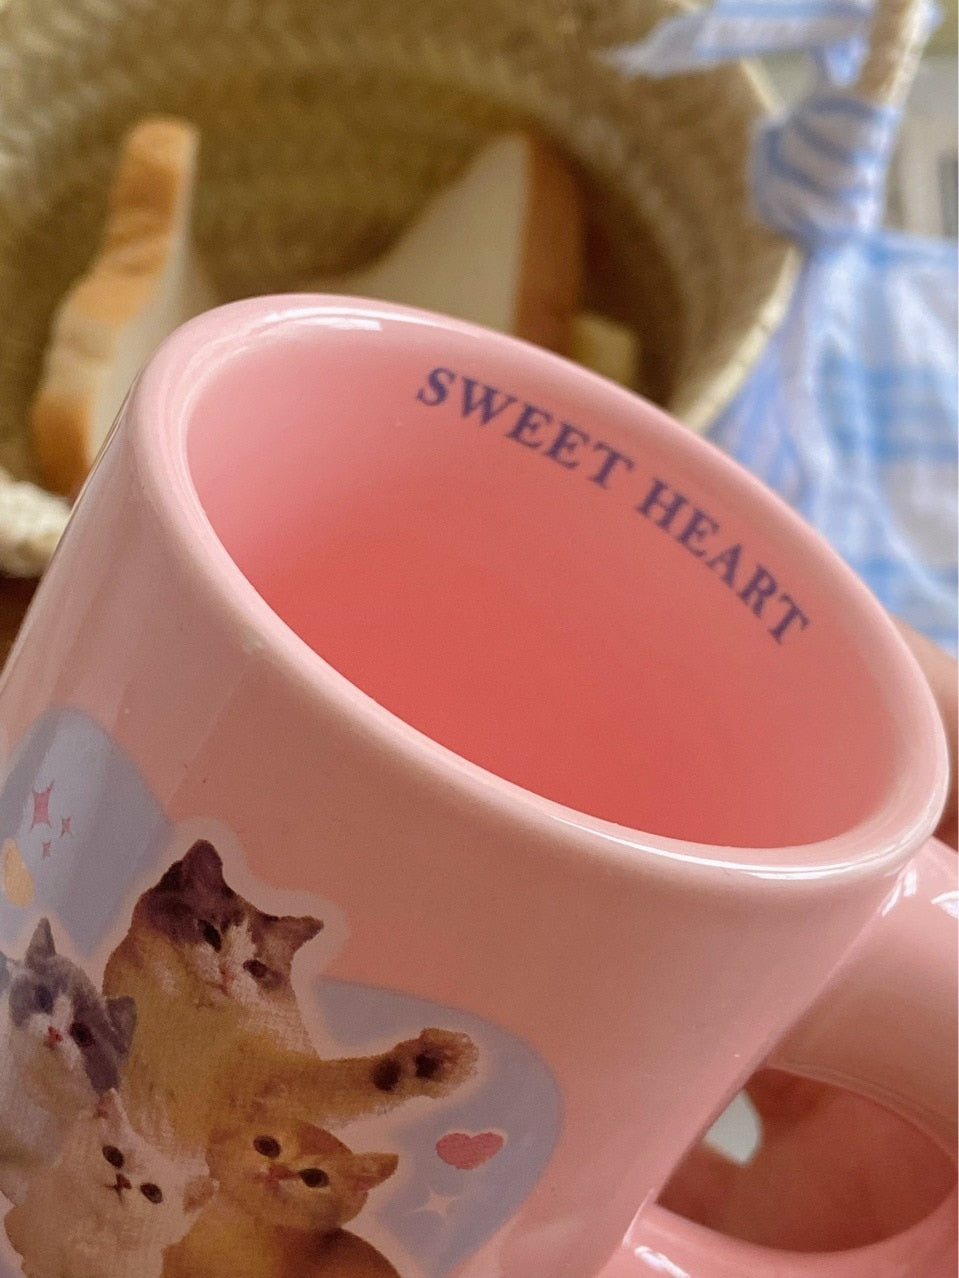 Printed Cat Mug